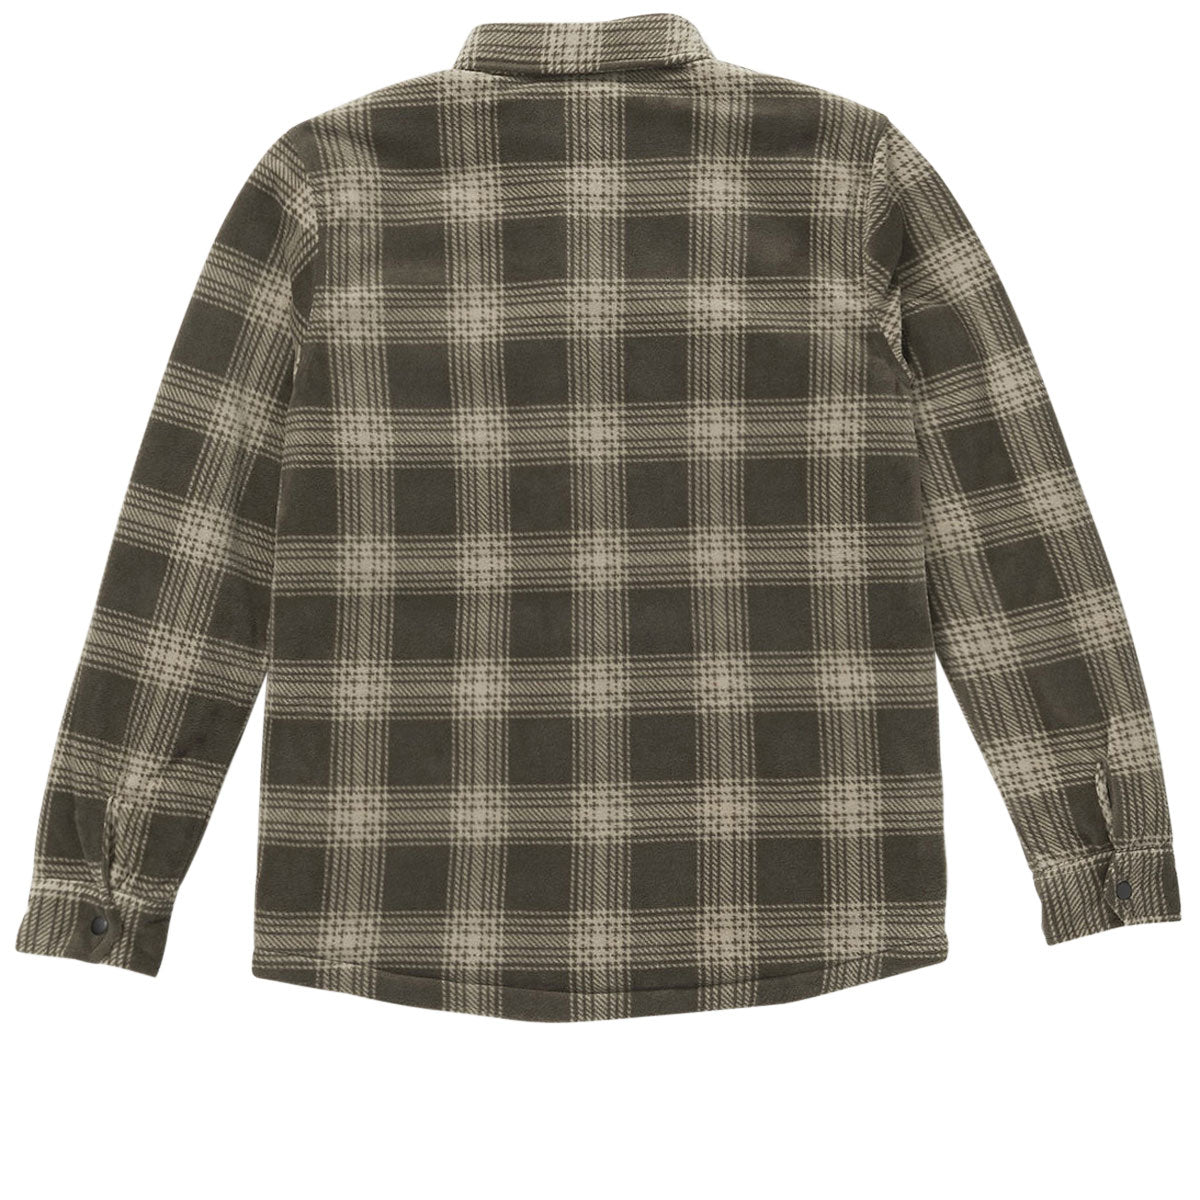 Volcom Bowered Fleece Shirt Jacket - Wren image 3